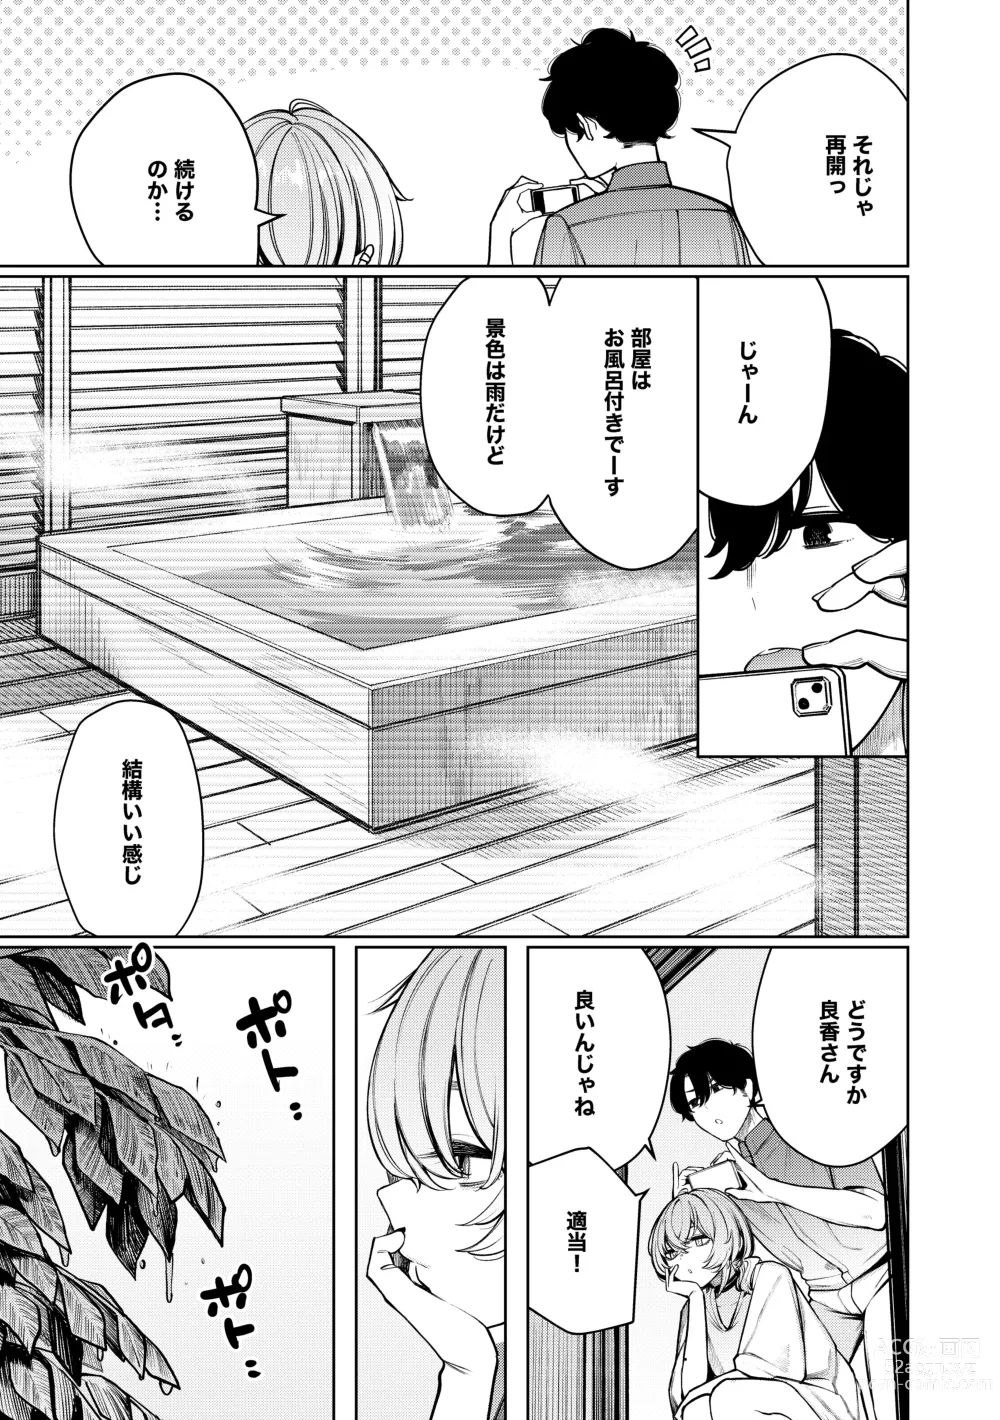 Page 7 of doujinshi Furyouppoi Kanojo to Daradara Hamedori Shitai.